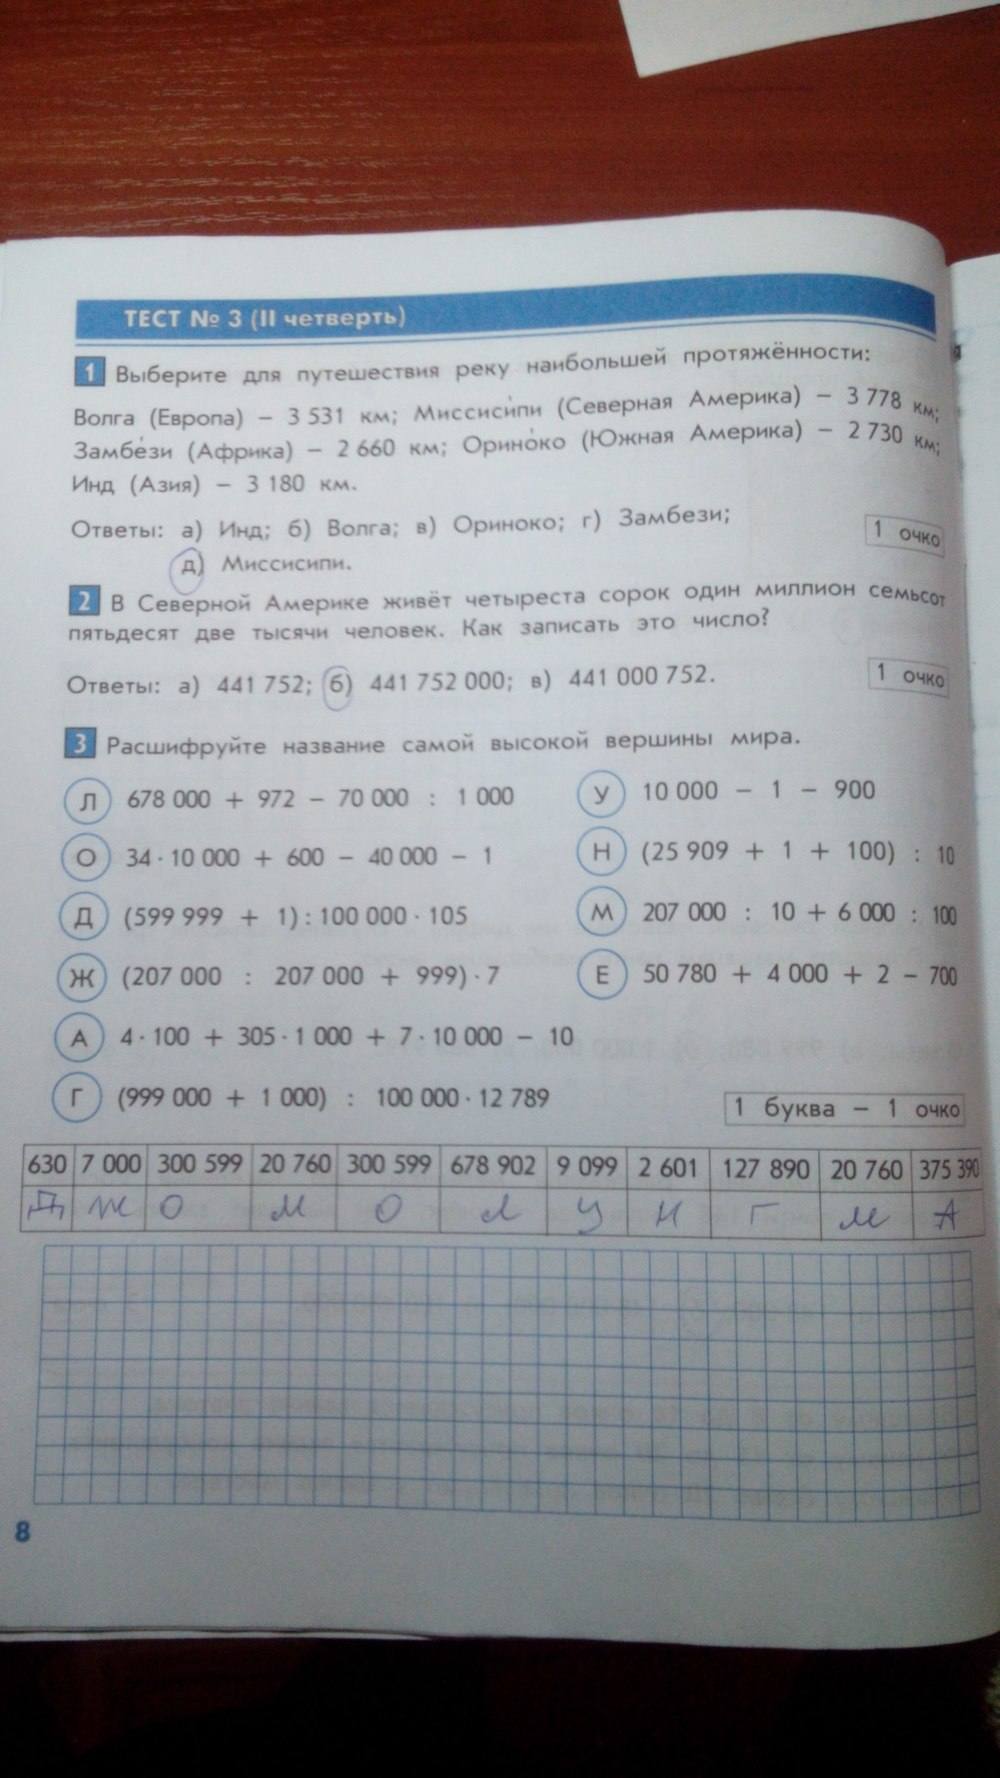 Тесты и контрольные работы, 4 класс, Козлова, Рубин, 2011, задание: стр. 8